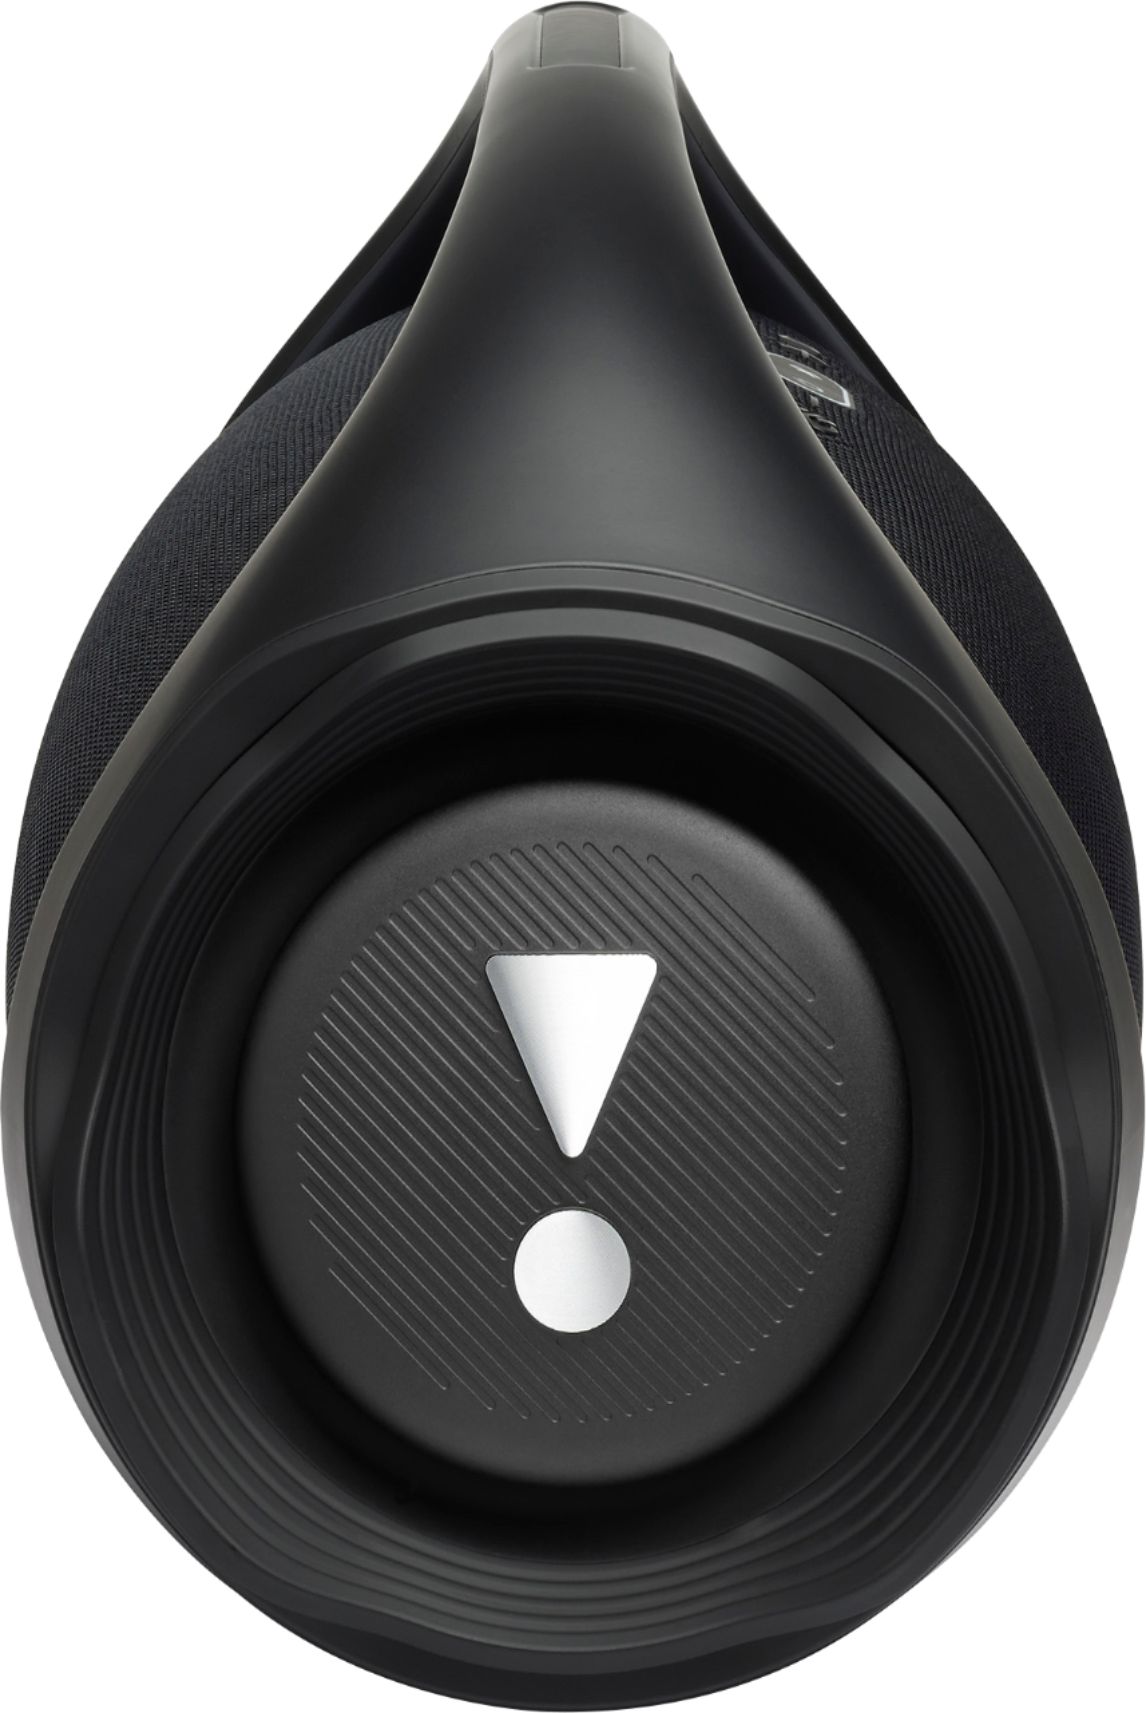 JBL Boombox 2 Portable Bluetooth Speaker Black JBLBOOMBOX2BLKAM 